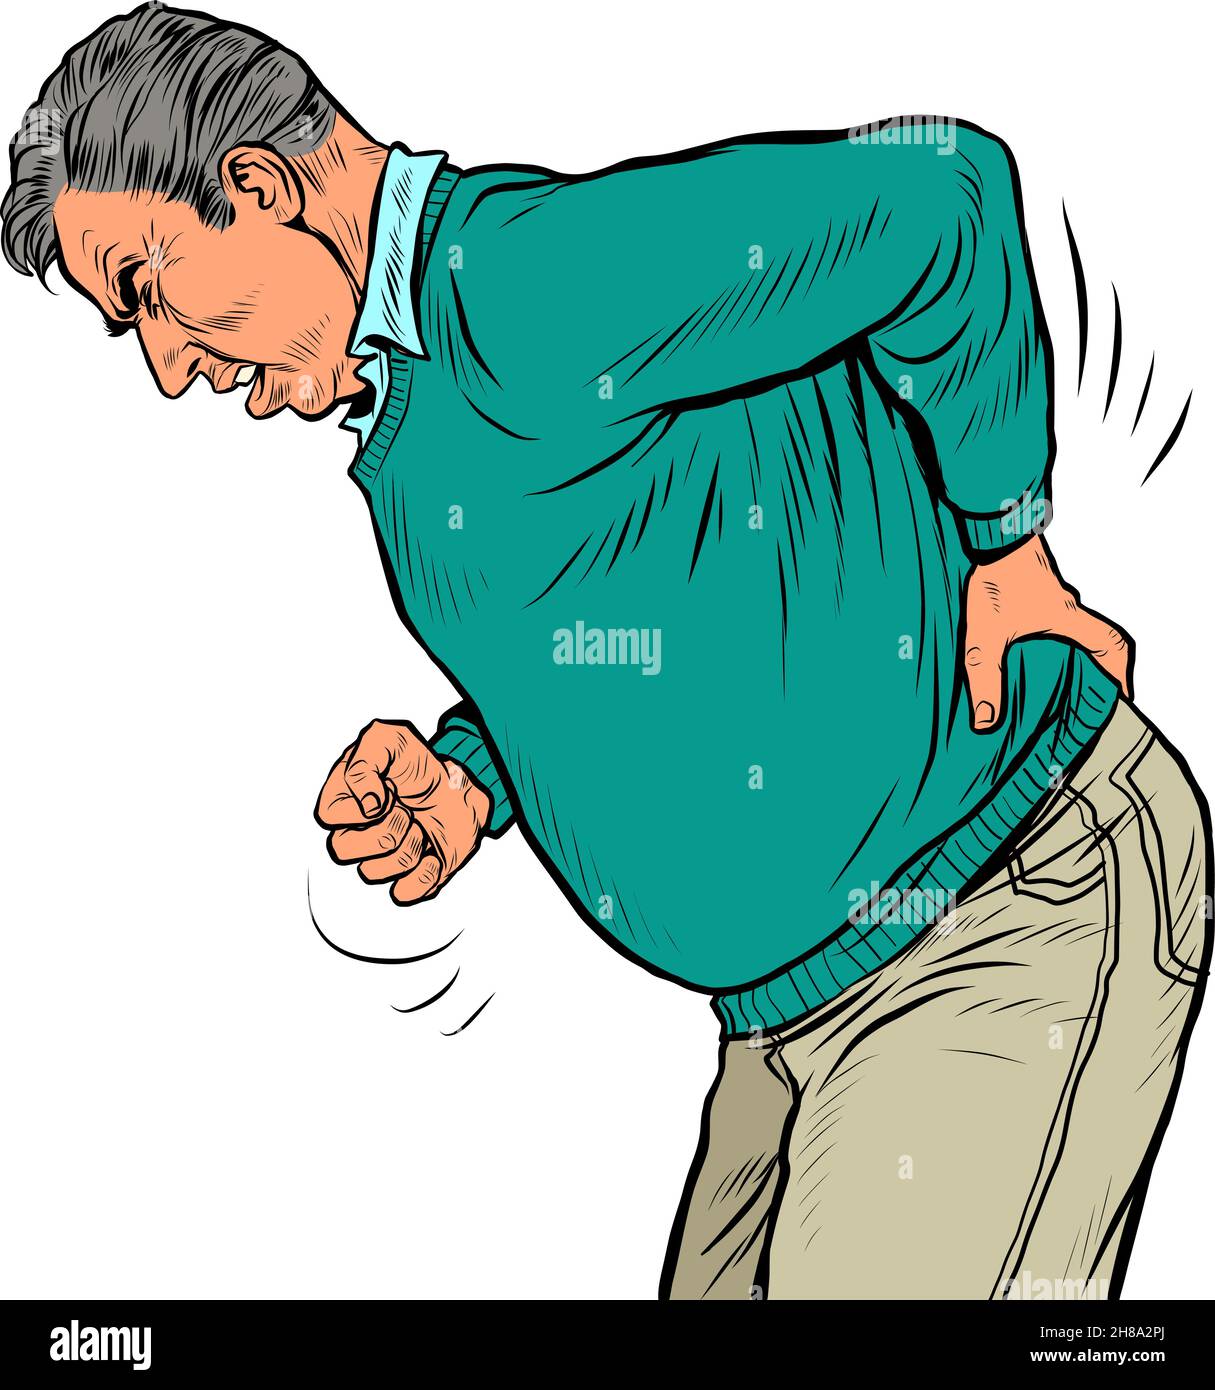 Ein älterer Mann Rückenschmerzen, Osteochondrose Hernie Verstauchung Ischias und andere Erkrankungen der Wirbelsäule und innere Organe Stock Vektor